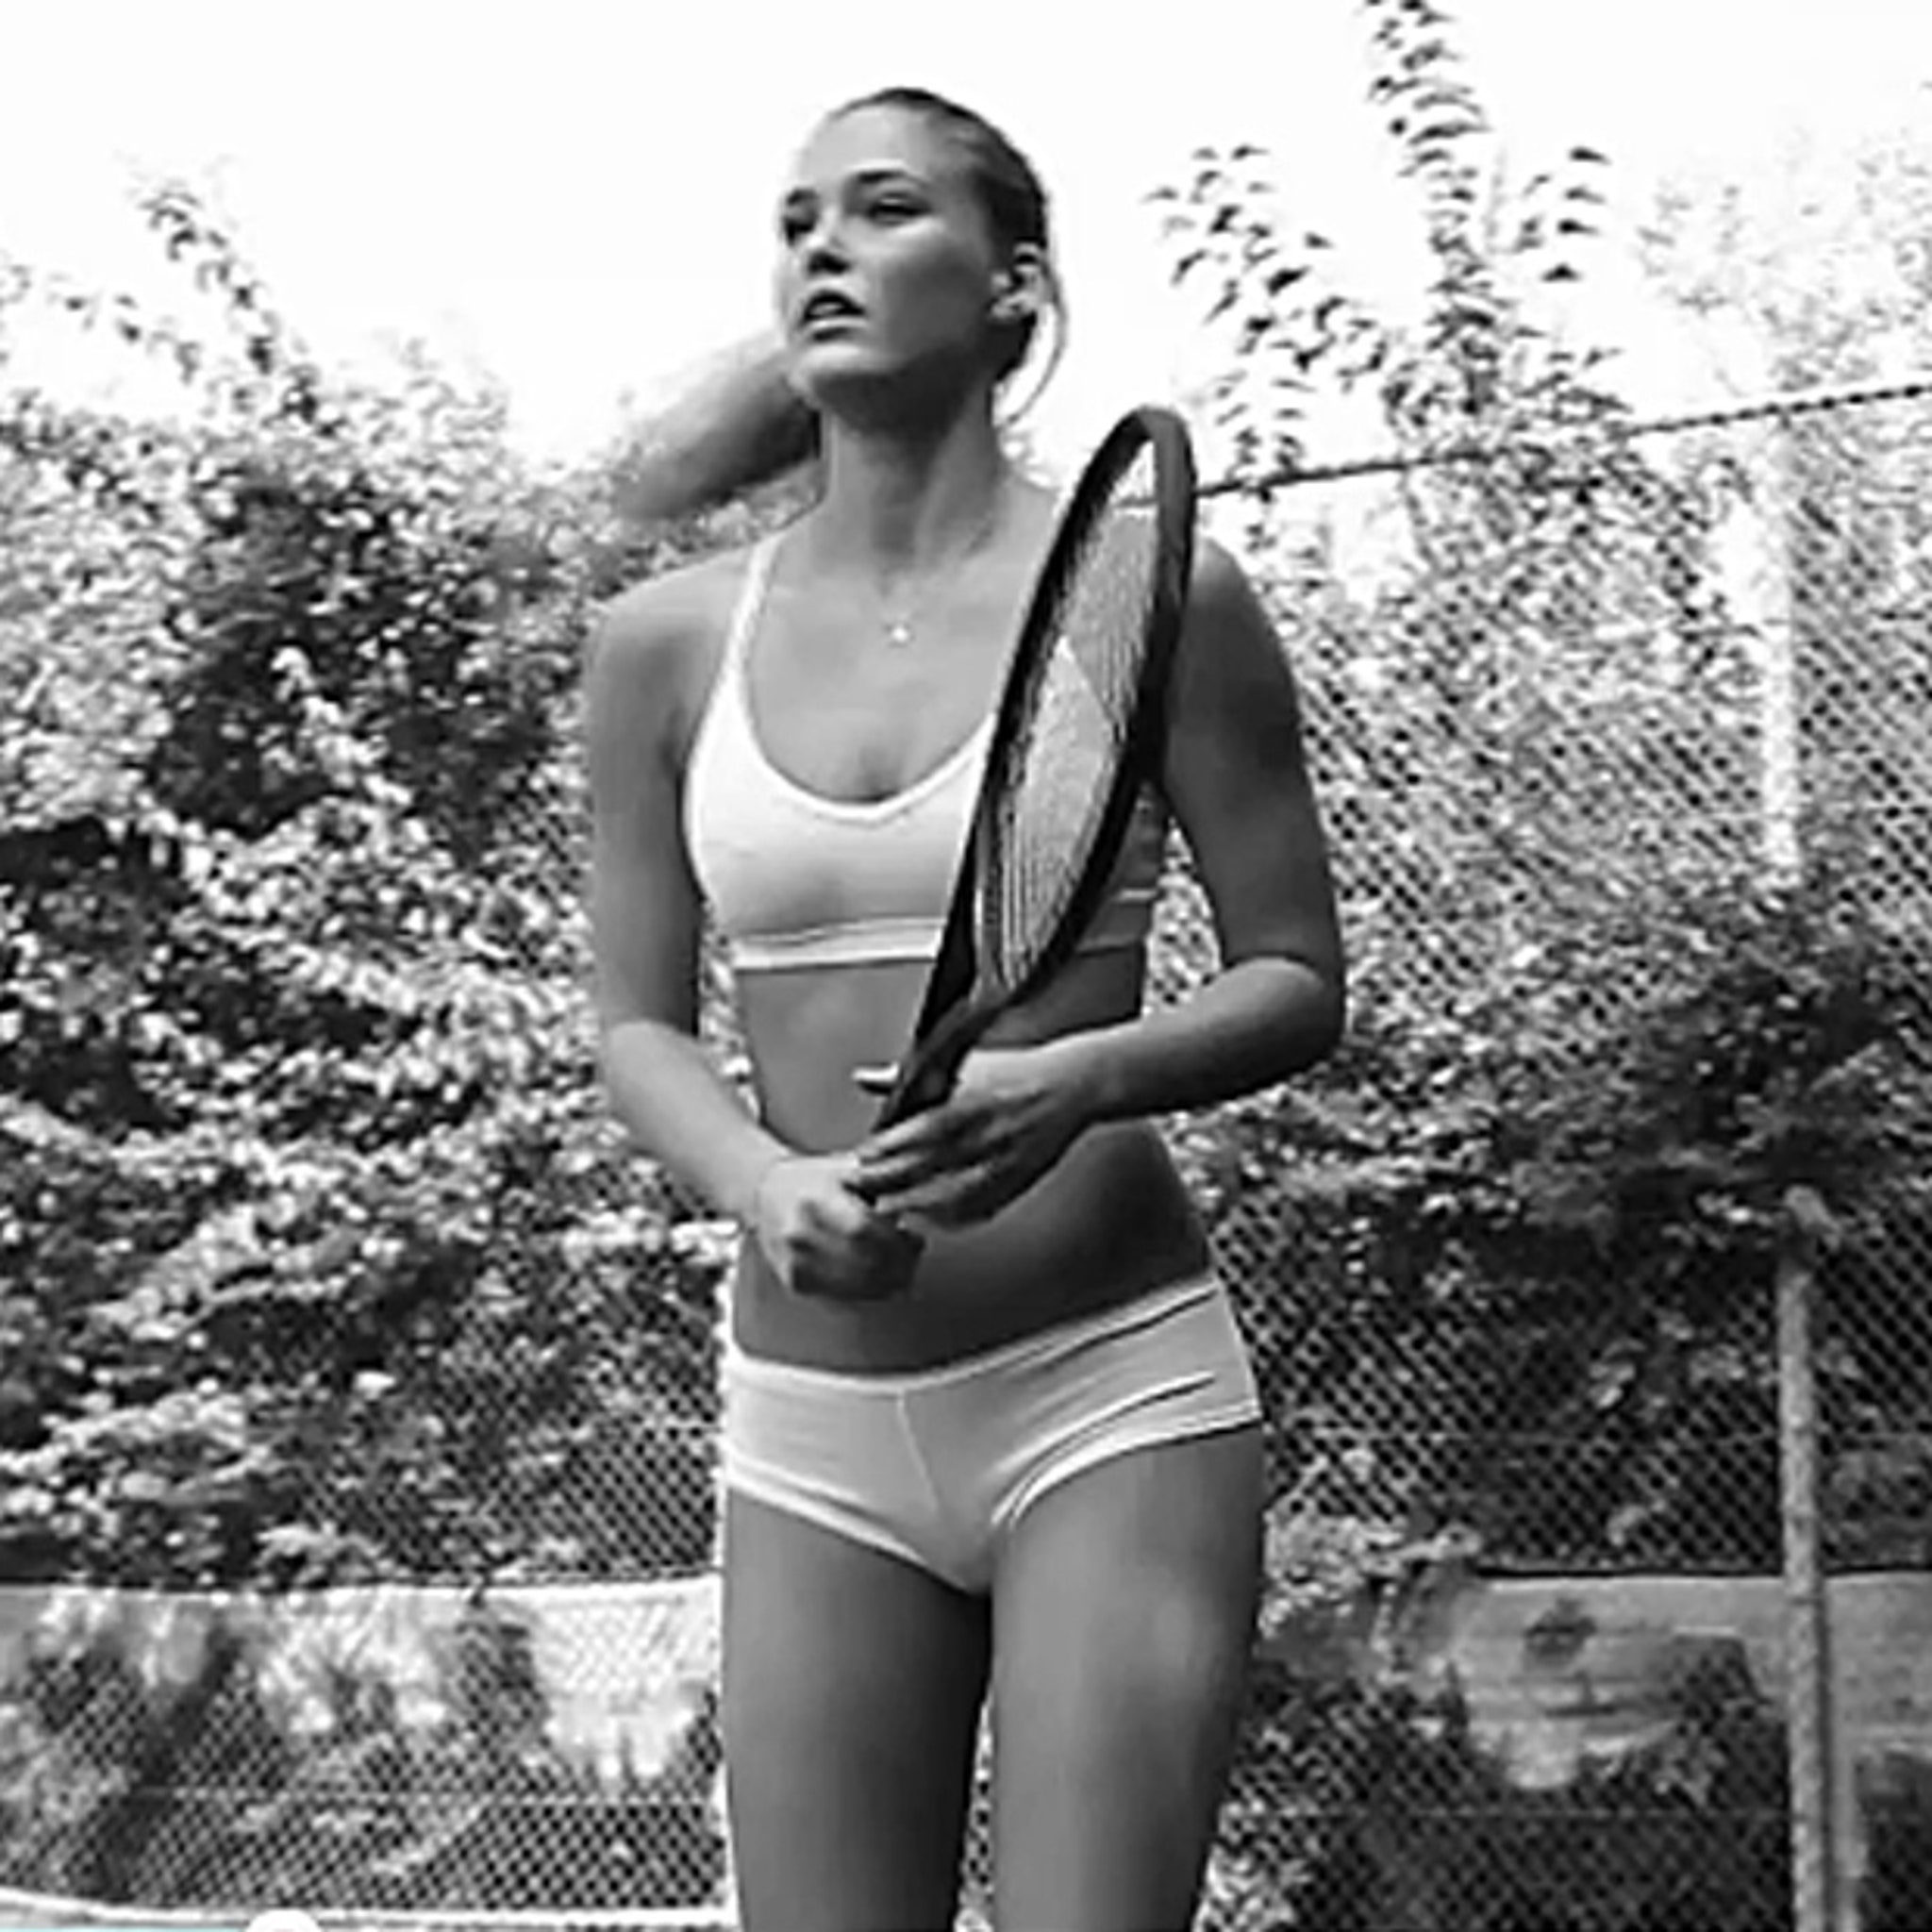 Bar Refaeli playing tennis in underwear - under.me Promo